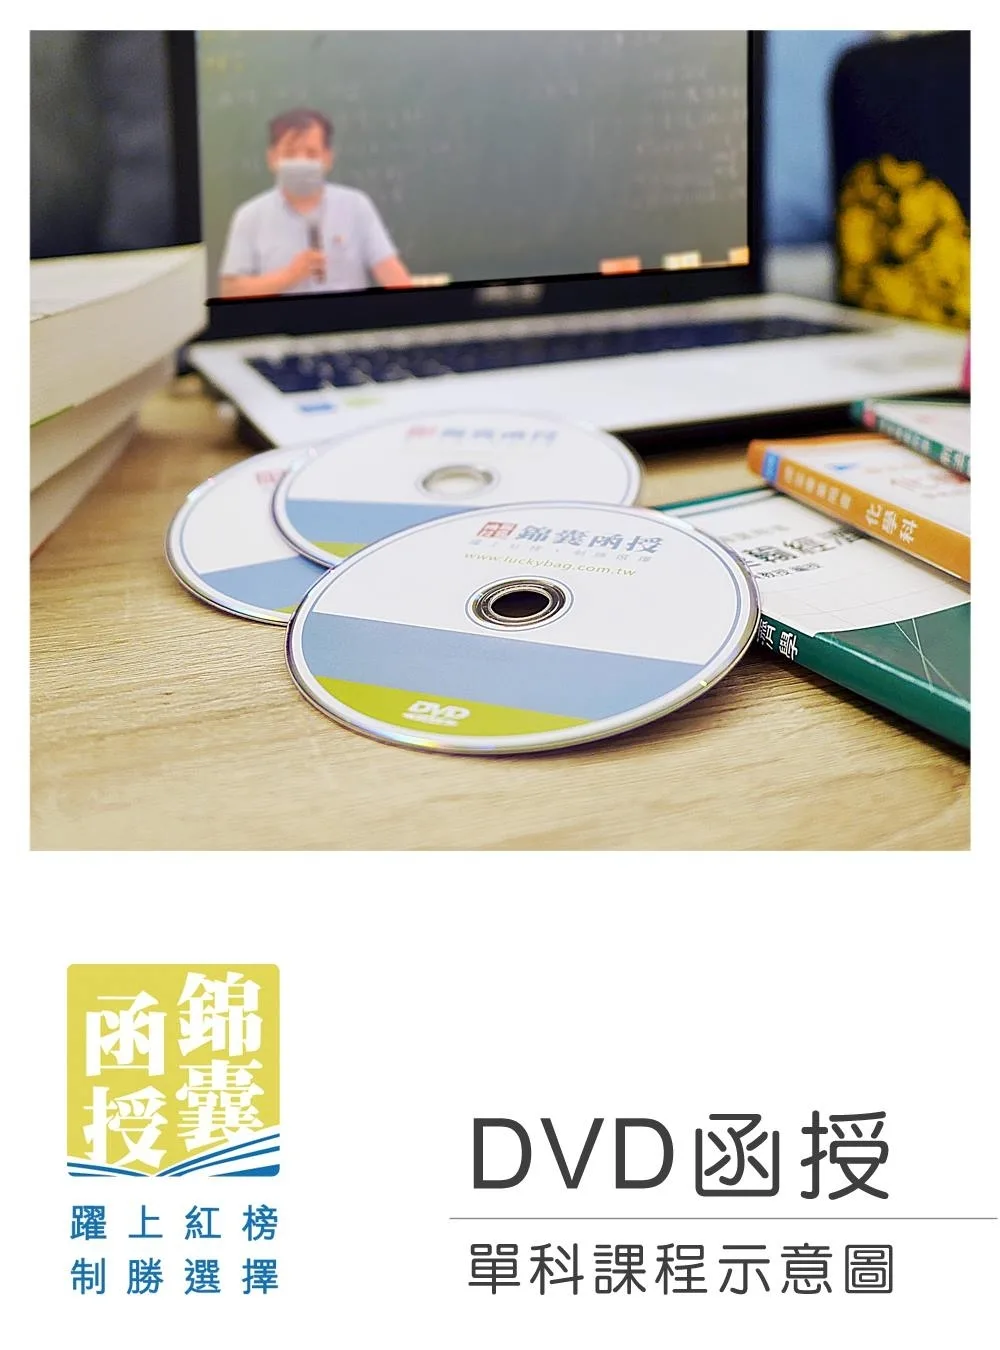 【DVD函授】國籍與戶籍法規-單科課程(111版)